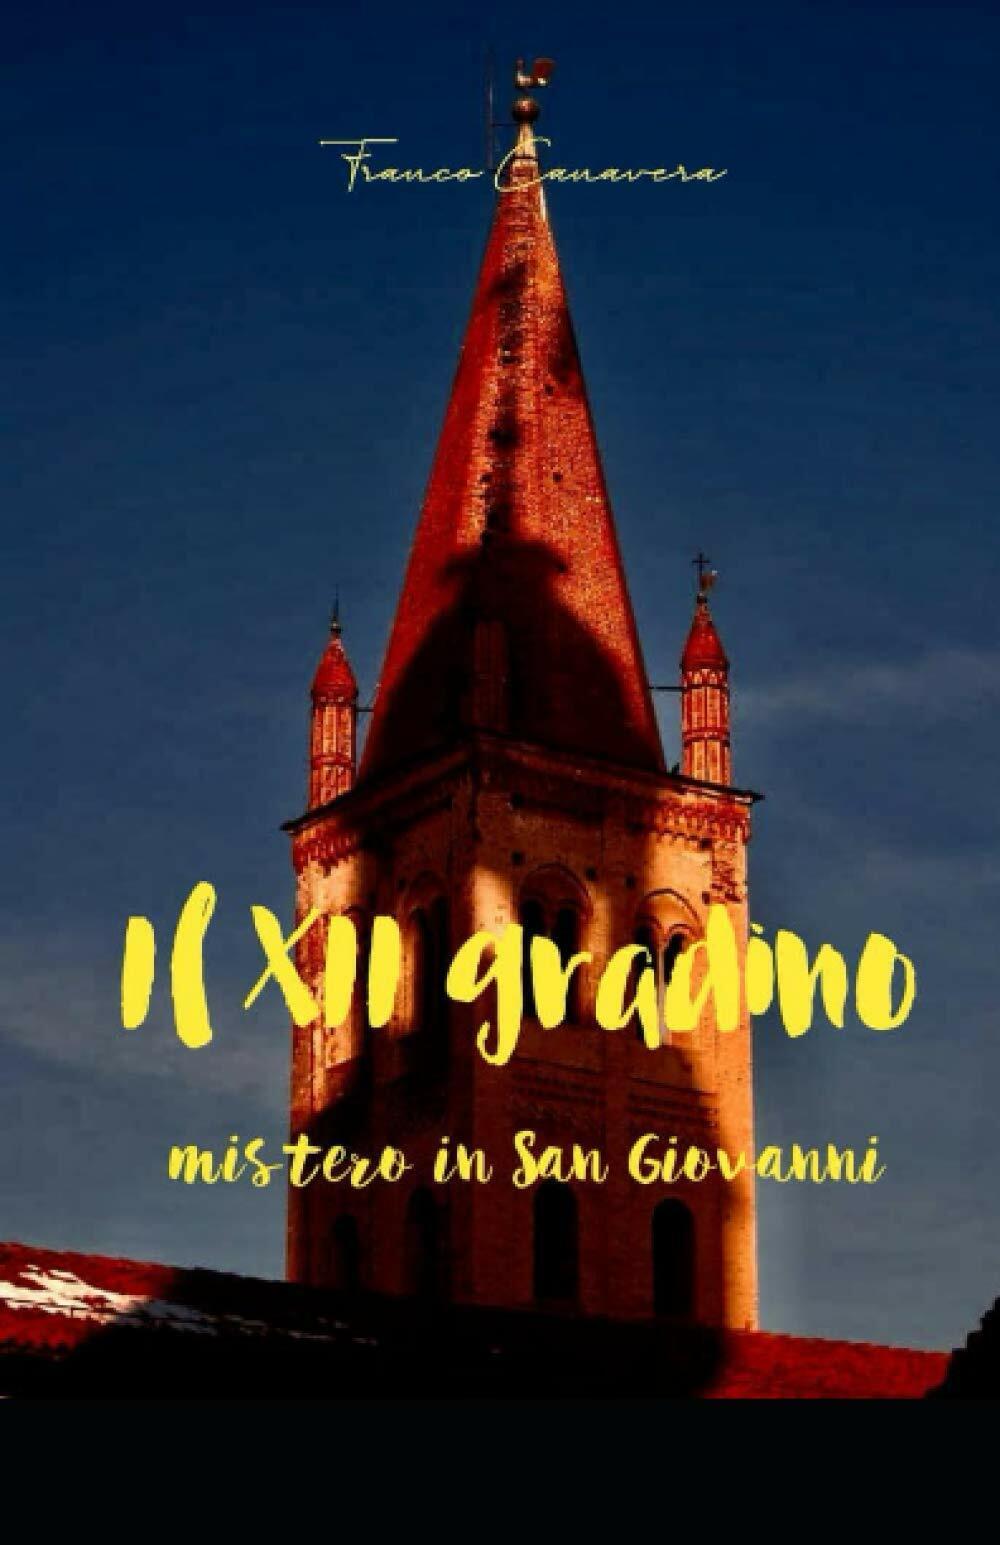 Il XII gradino: mistero in San Giovanni di Franco Canavera,  2020,  Indipendentl